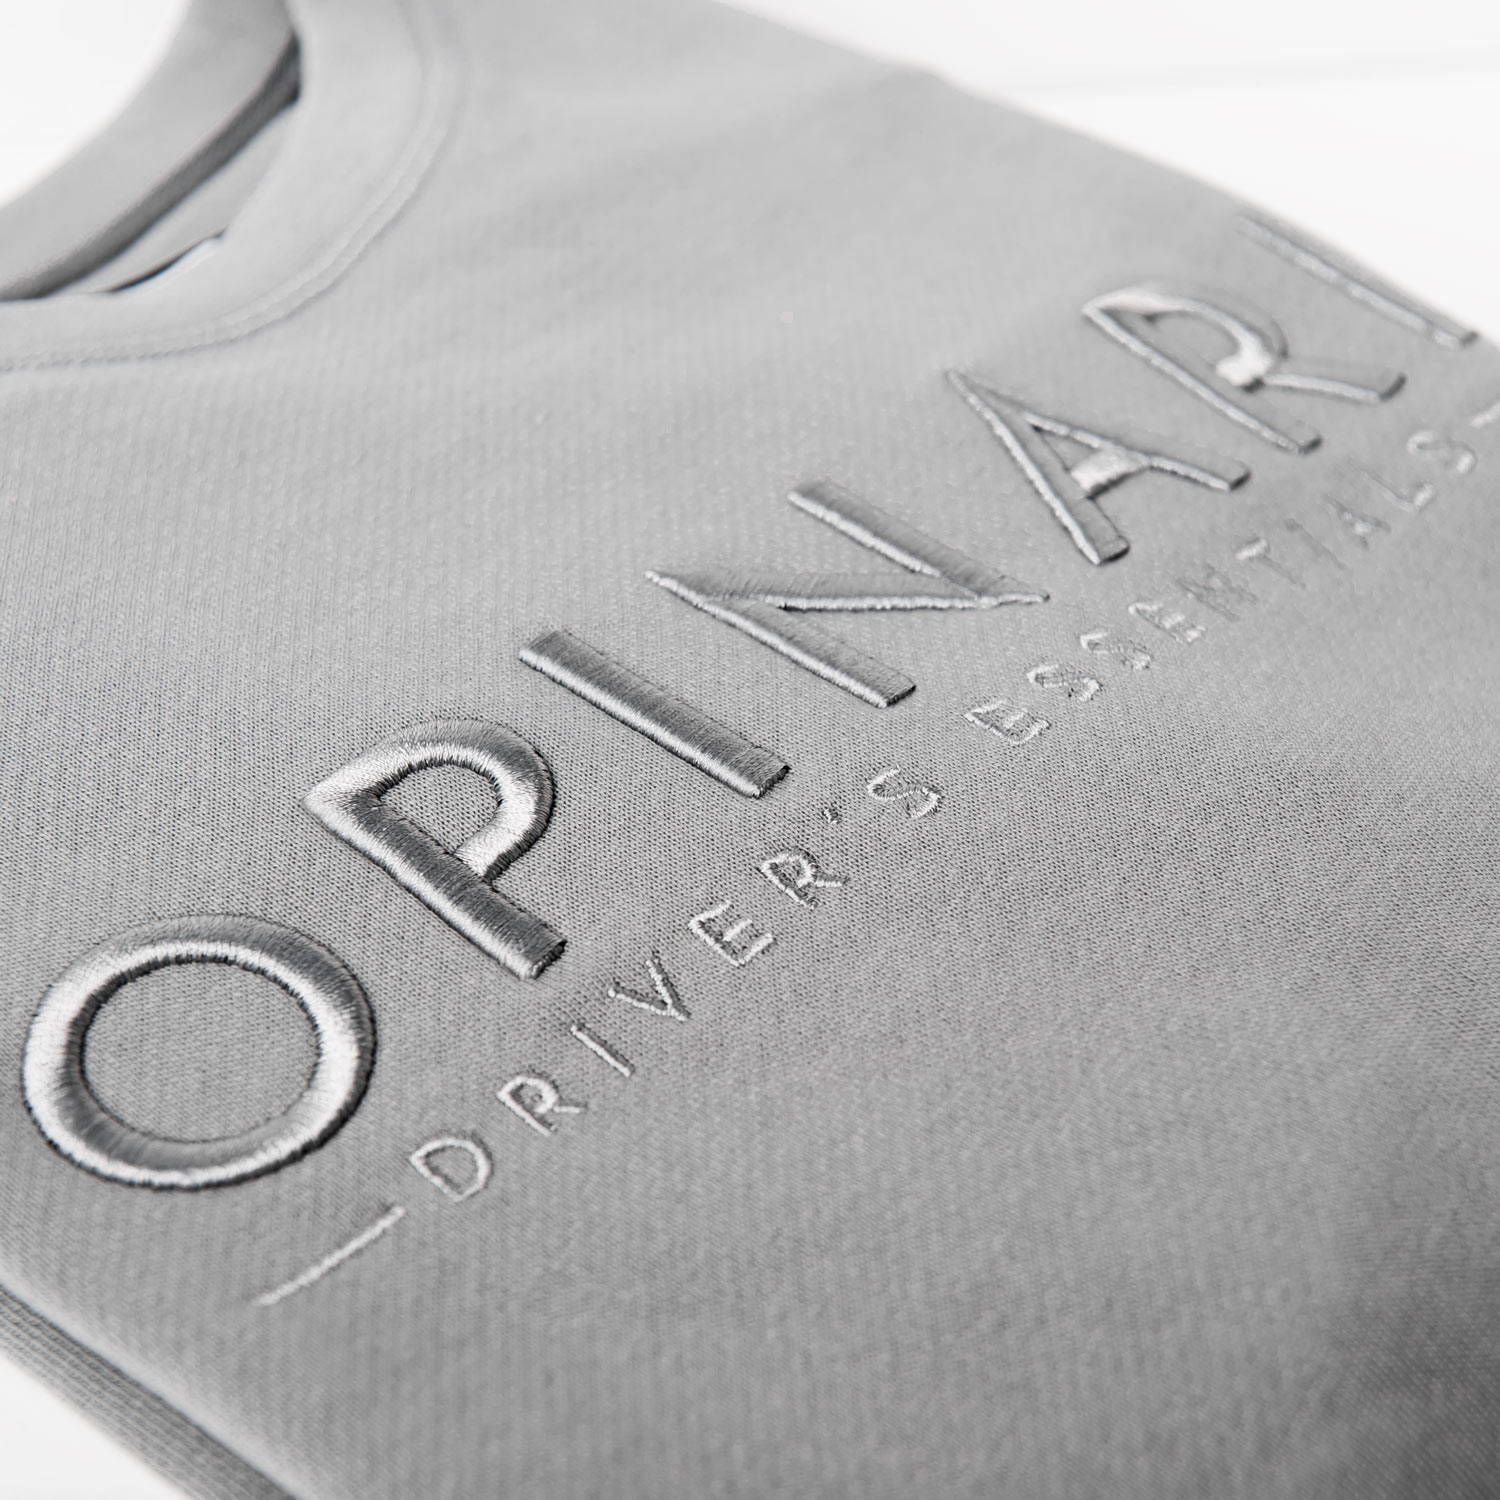 OPINARI sweater grey on grey